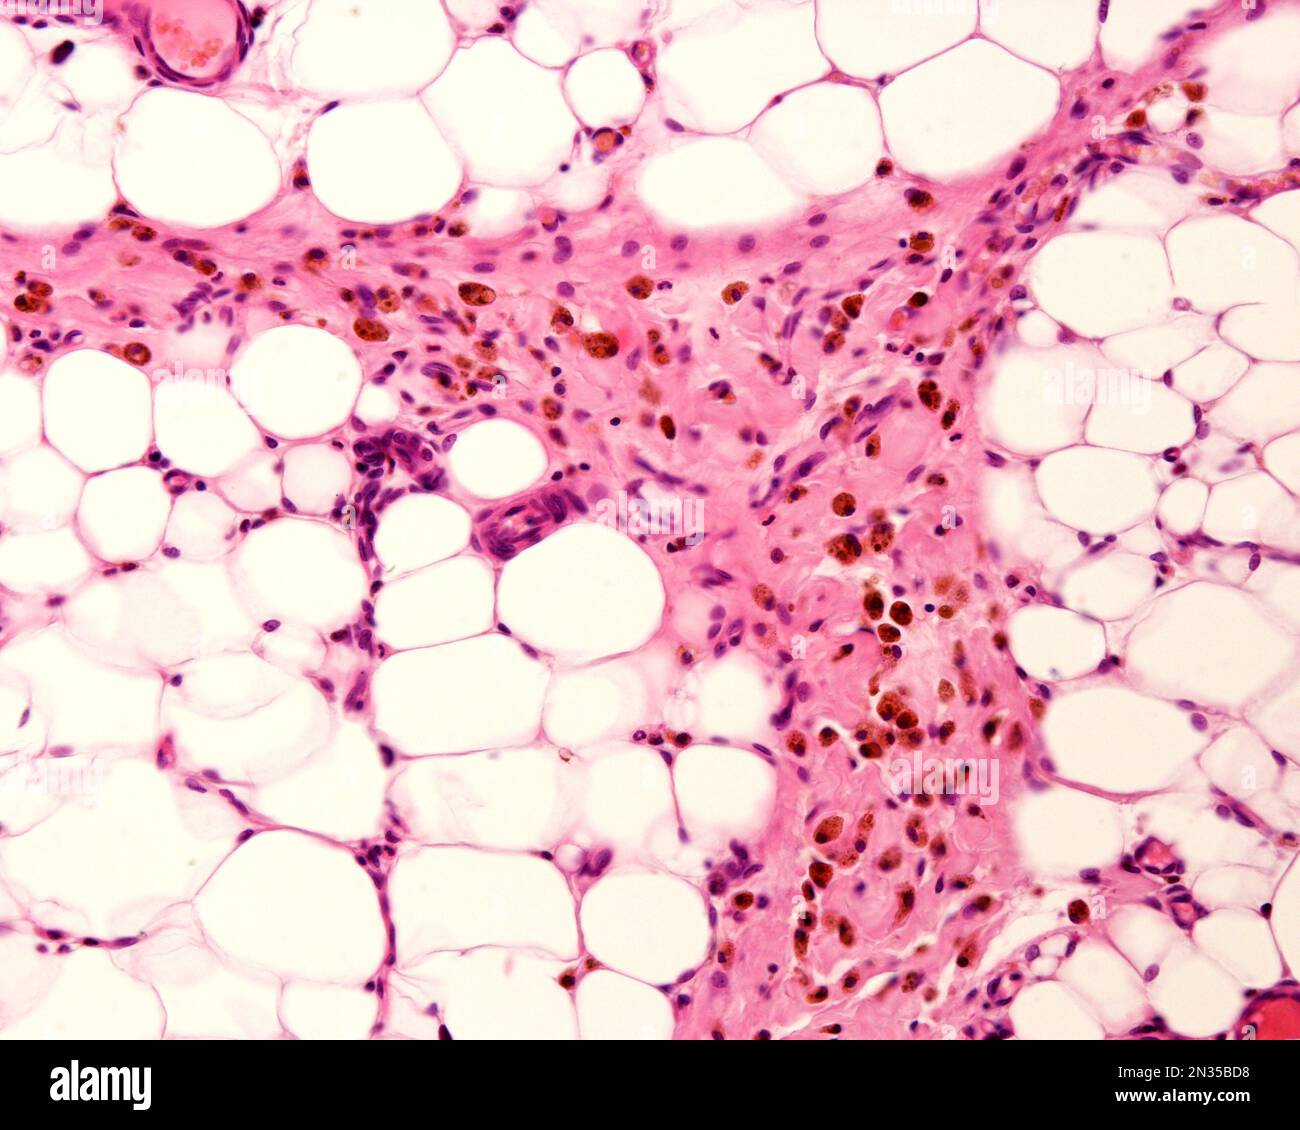 Graisse péritonéale montrant des macrophages marqués avec du fer colloïdal. Le fer colloïdal peut être utilisé comme coloration vitale pour marquer les macrophages. Circulation colloïdale Banque D'Images